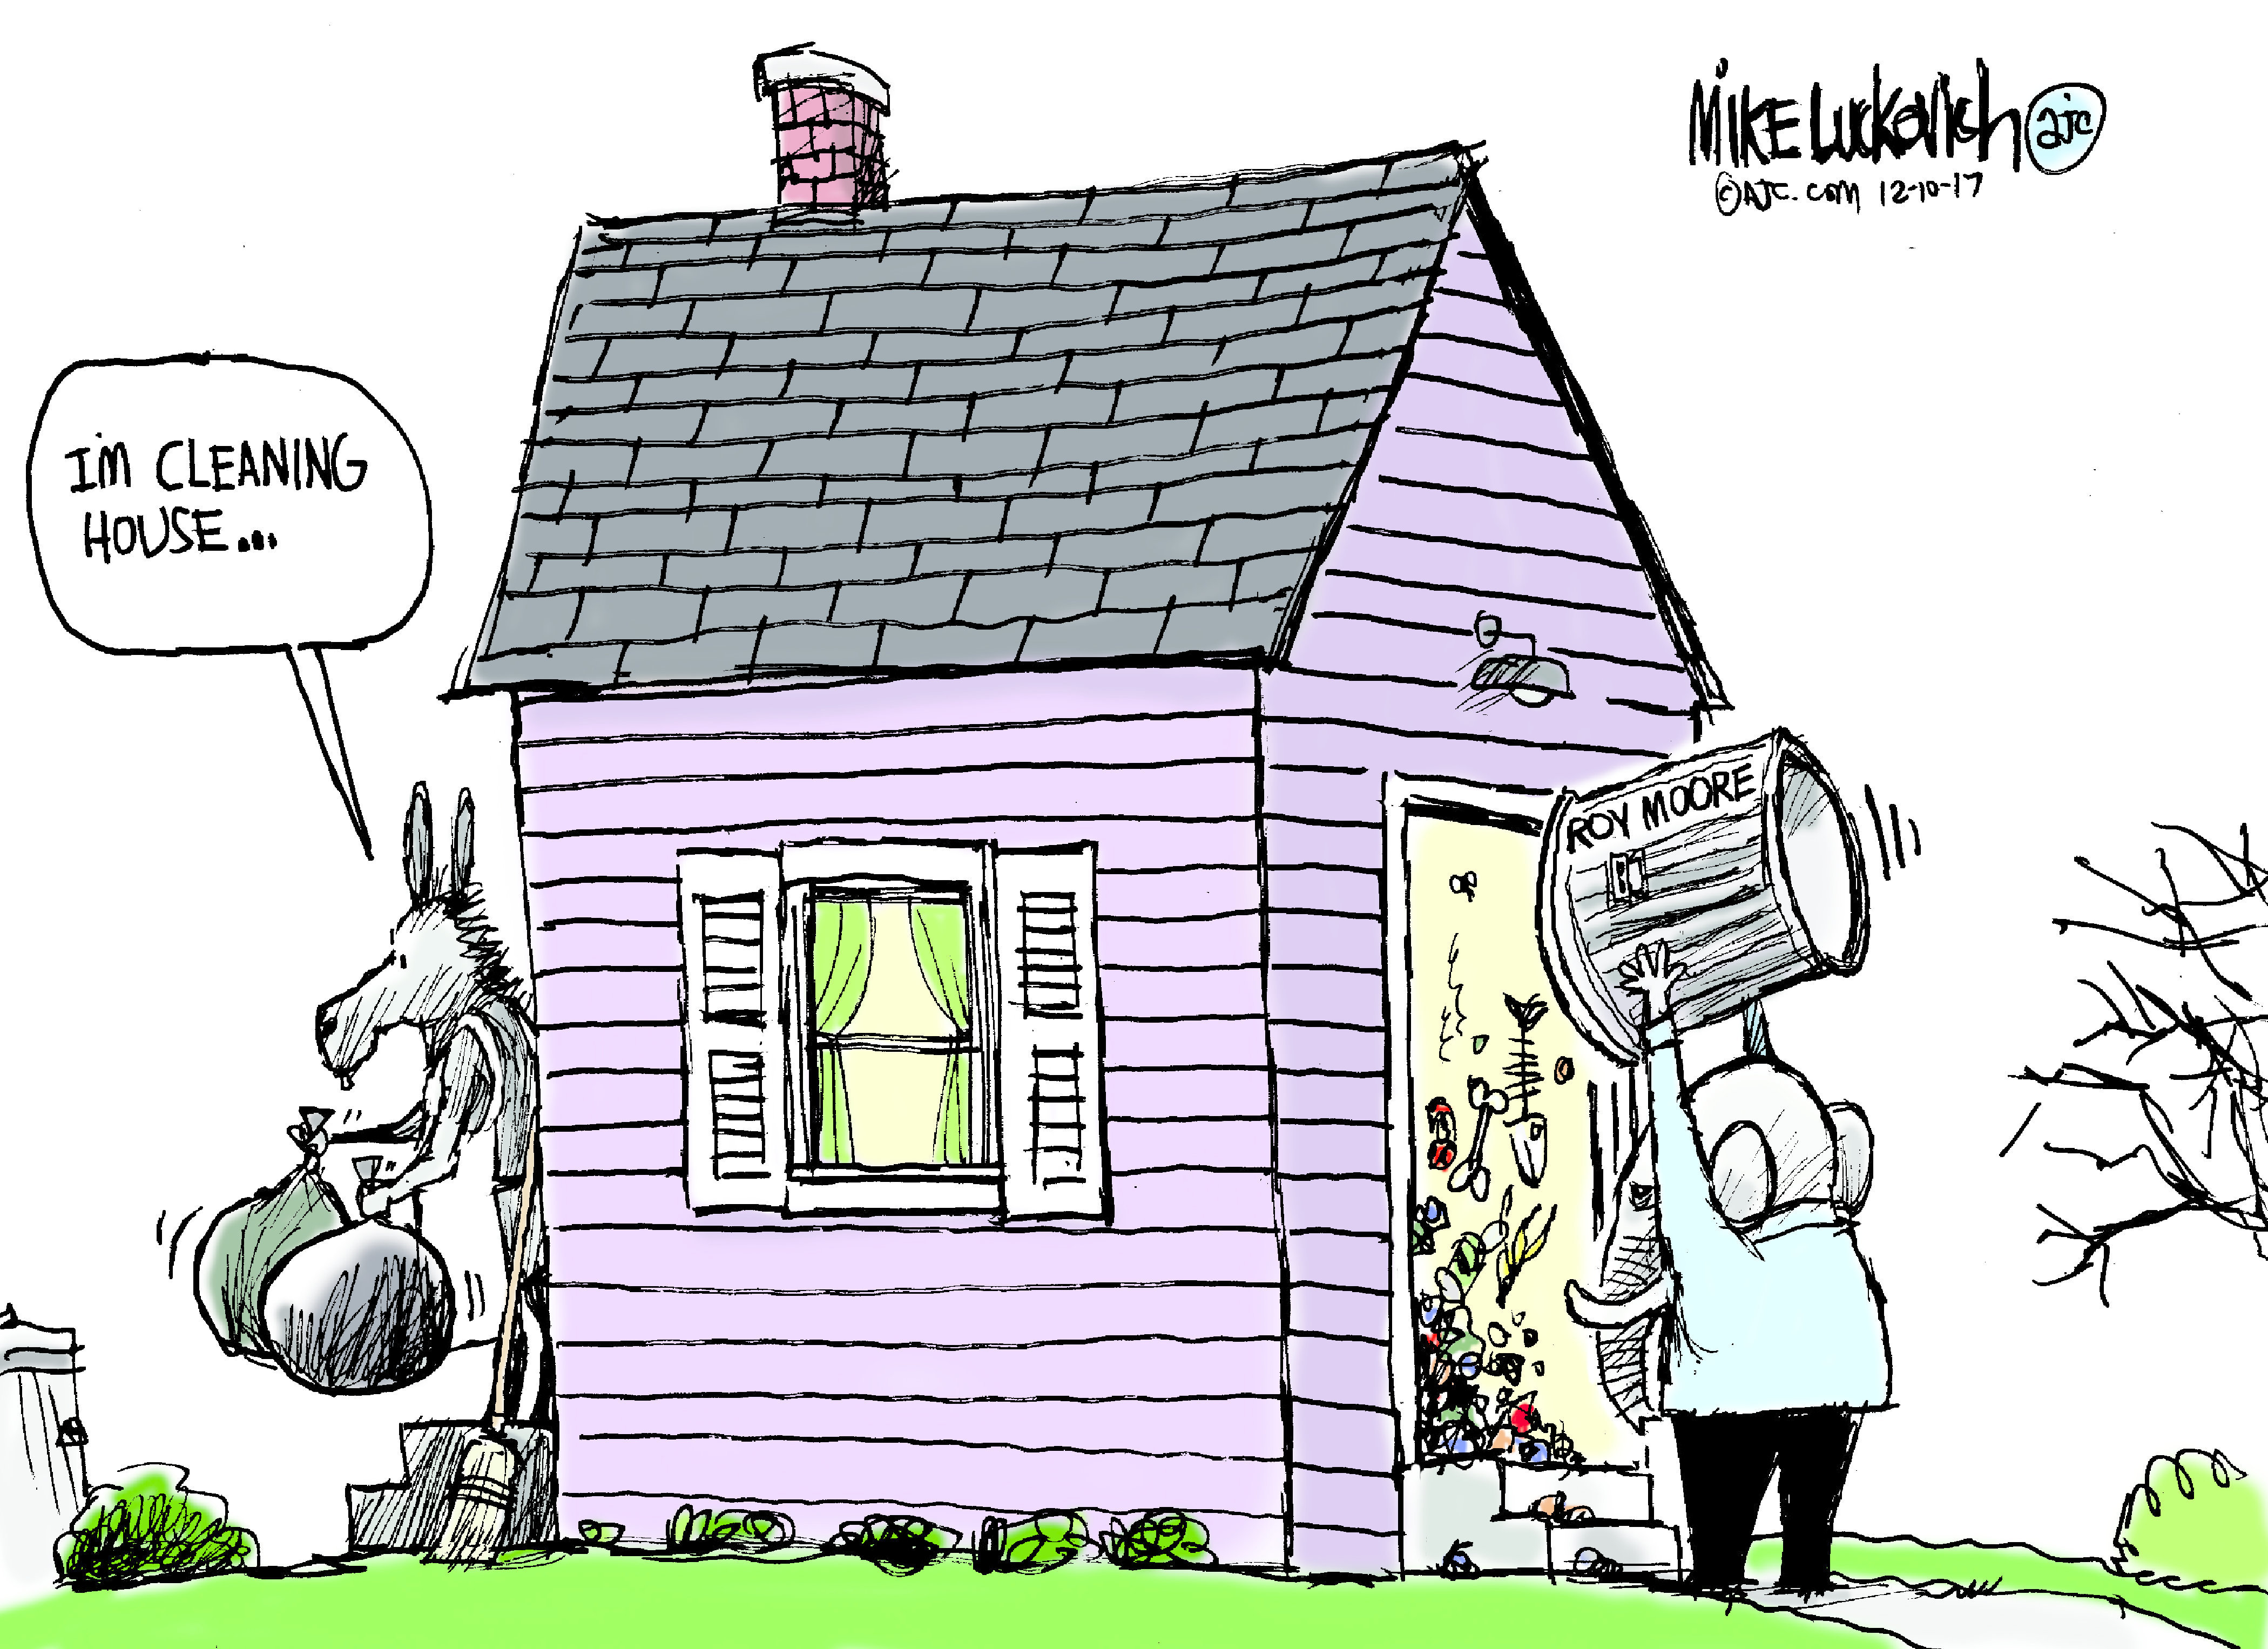 Political cartoon U.S. Roy Moore sexual harassment Democrats Conyers Franken